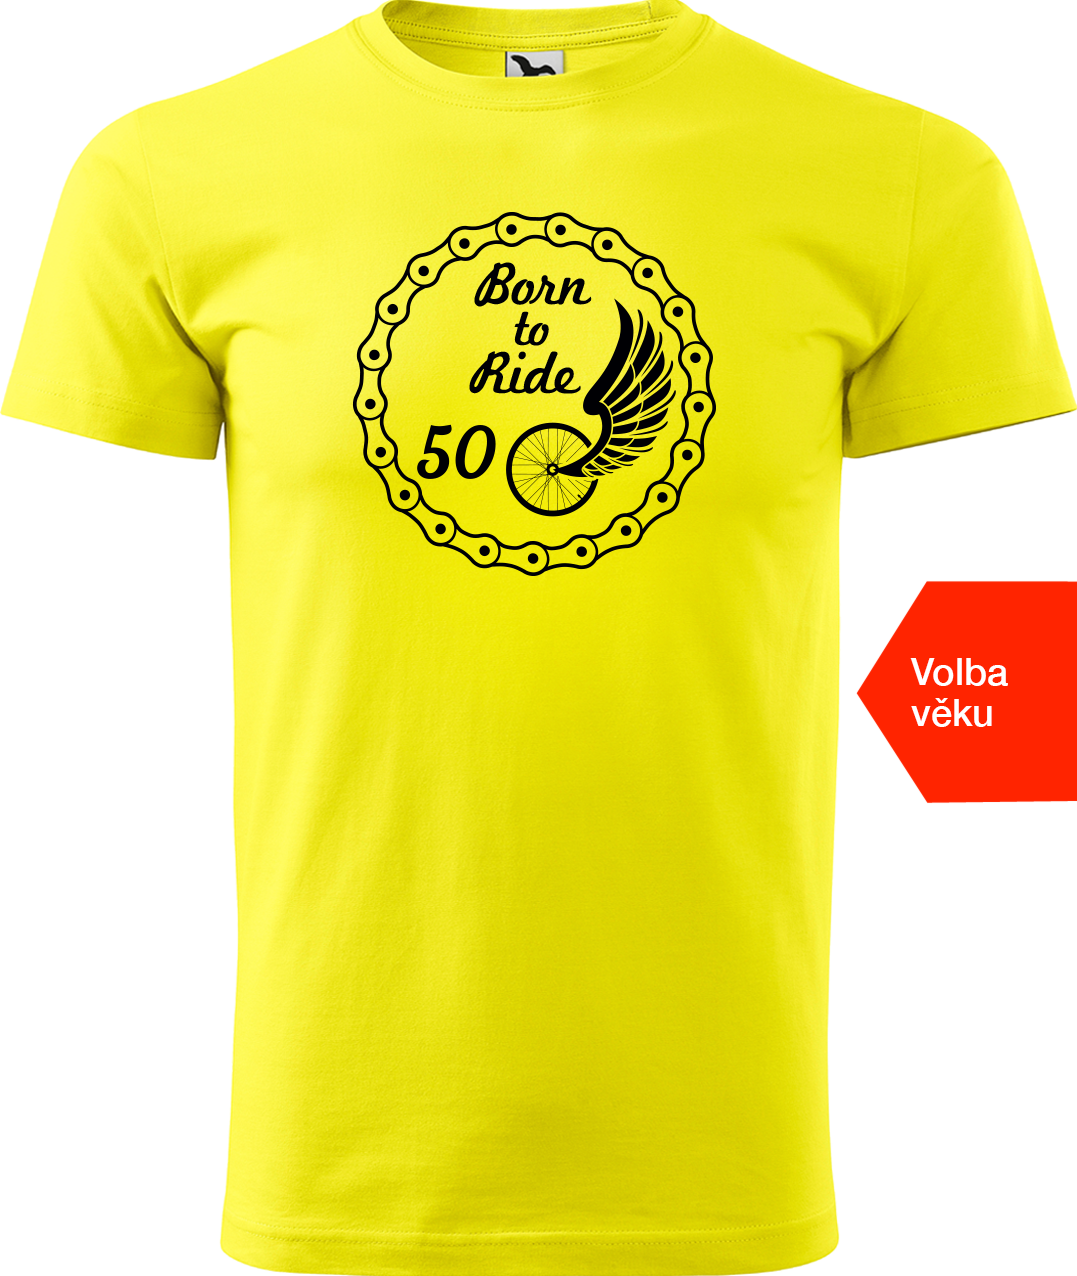 Pánské tričko pro cyklistu s věkem - Born to Ride (wings) Velikost: S, Barva: Žlutá (04)